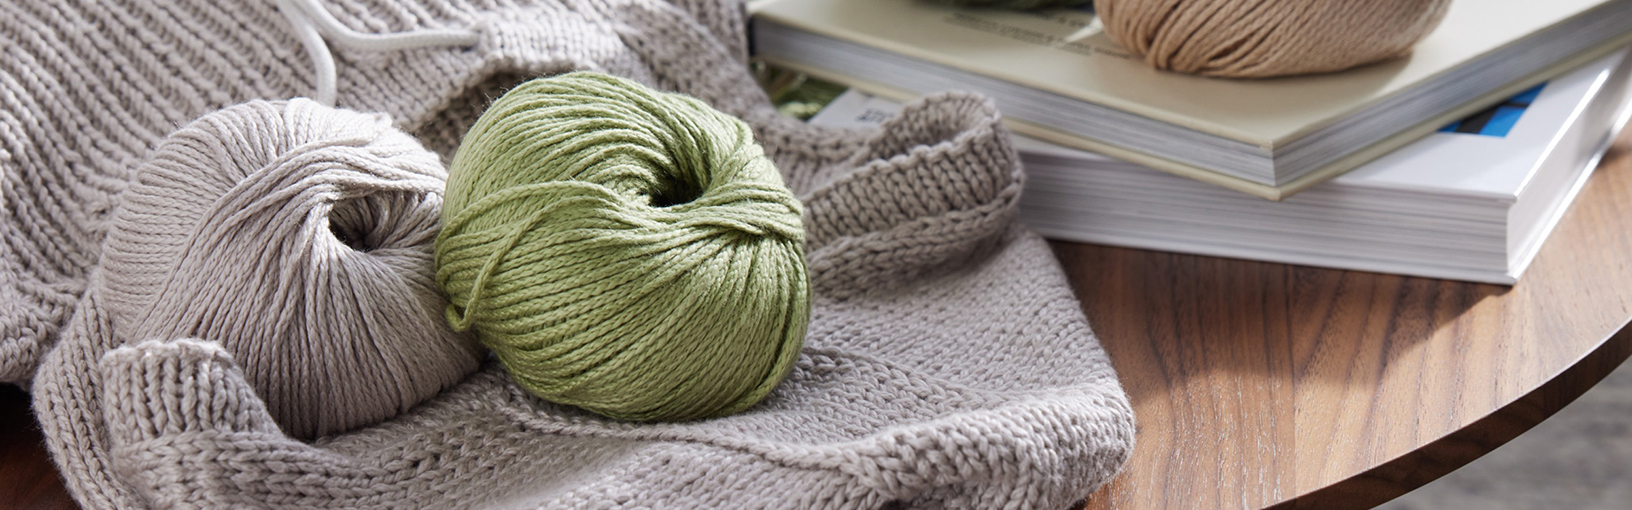 Garn av hög kvalitet för stickning, virkning och filtning LANA GROSSA<br> ull & garn | Tweed